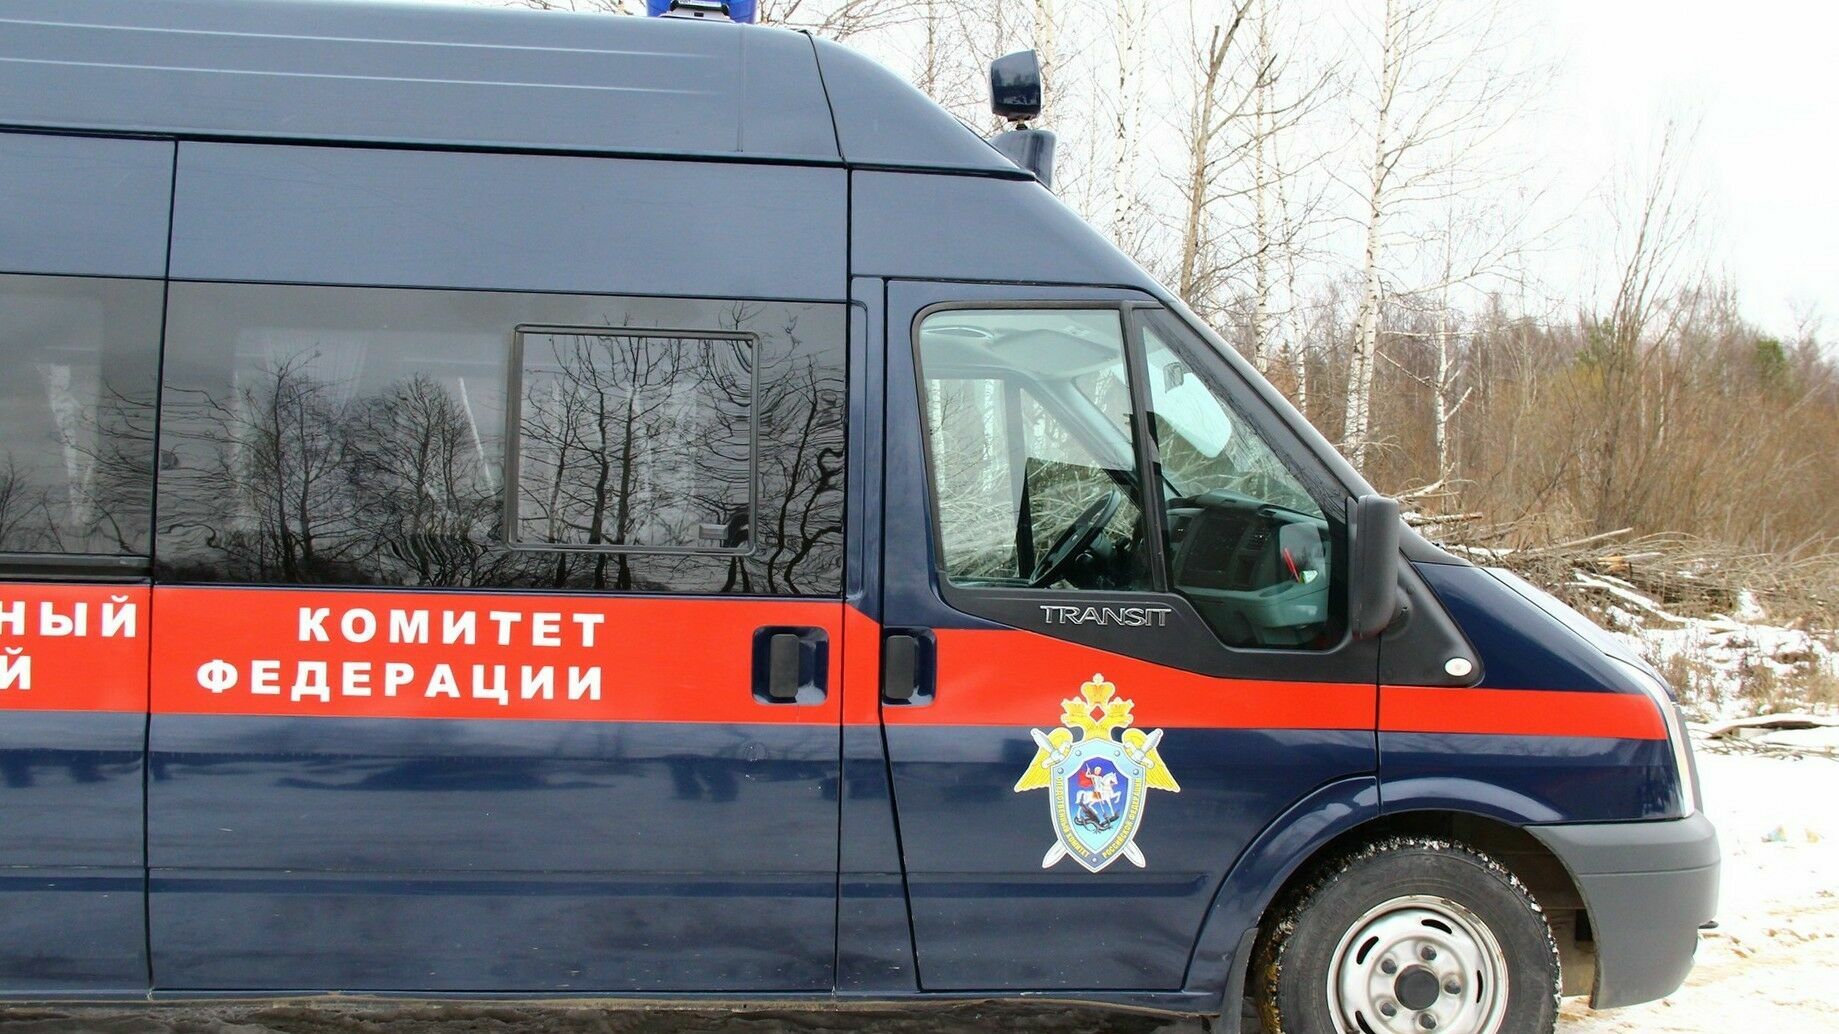 Следственный комитет возбудил уголовное дело после смерти шестилетнего мальчика в Красновишерске